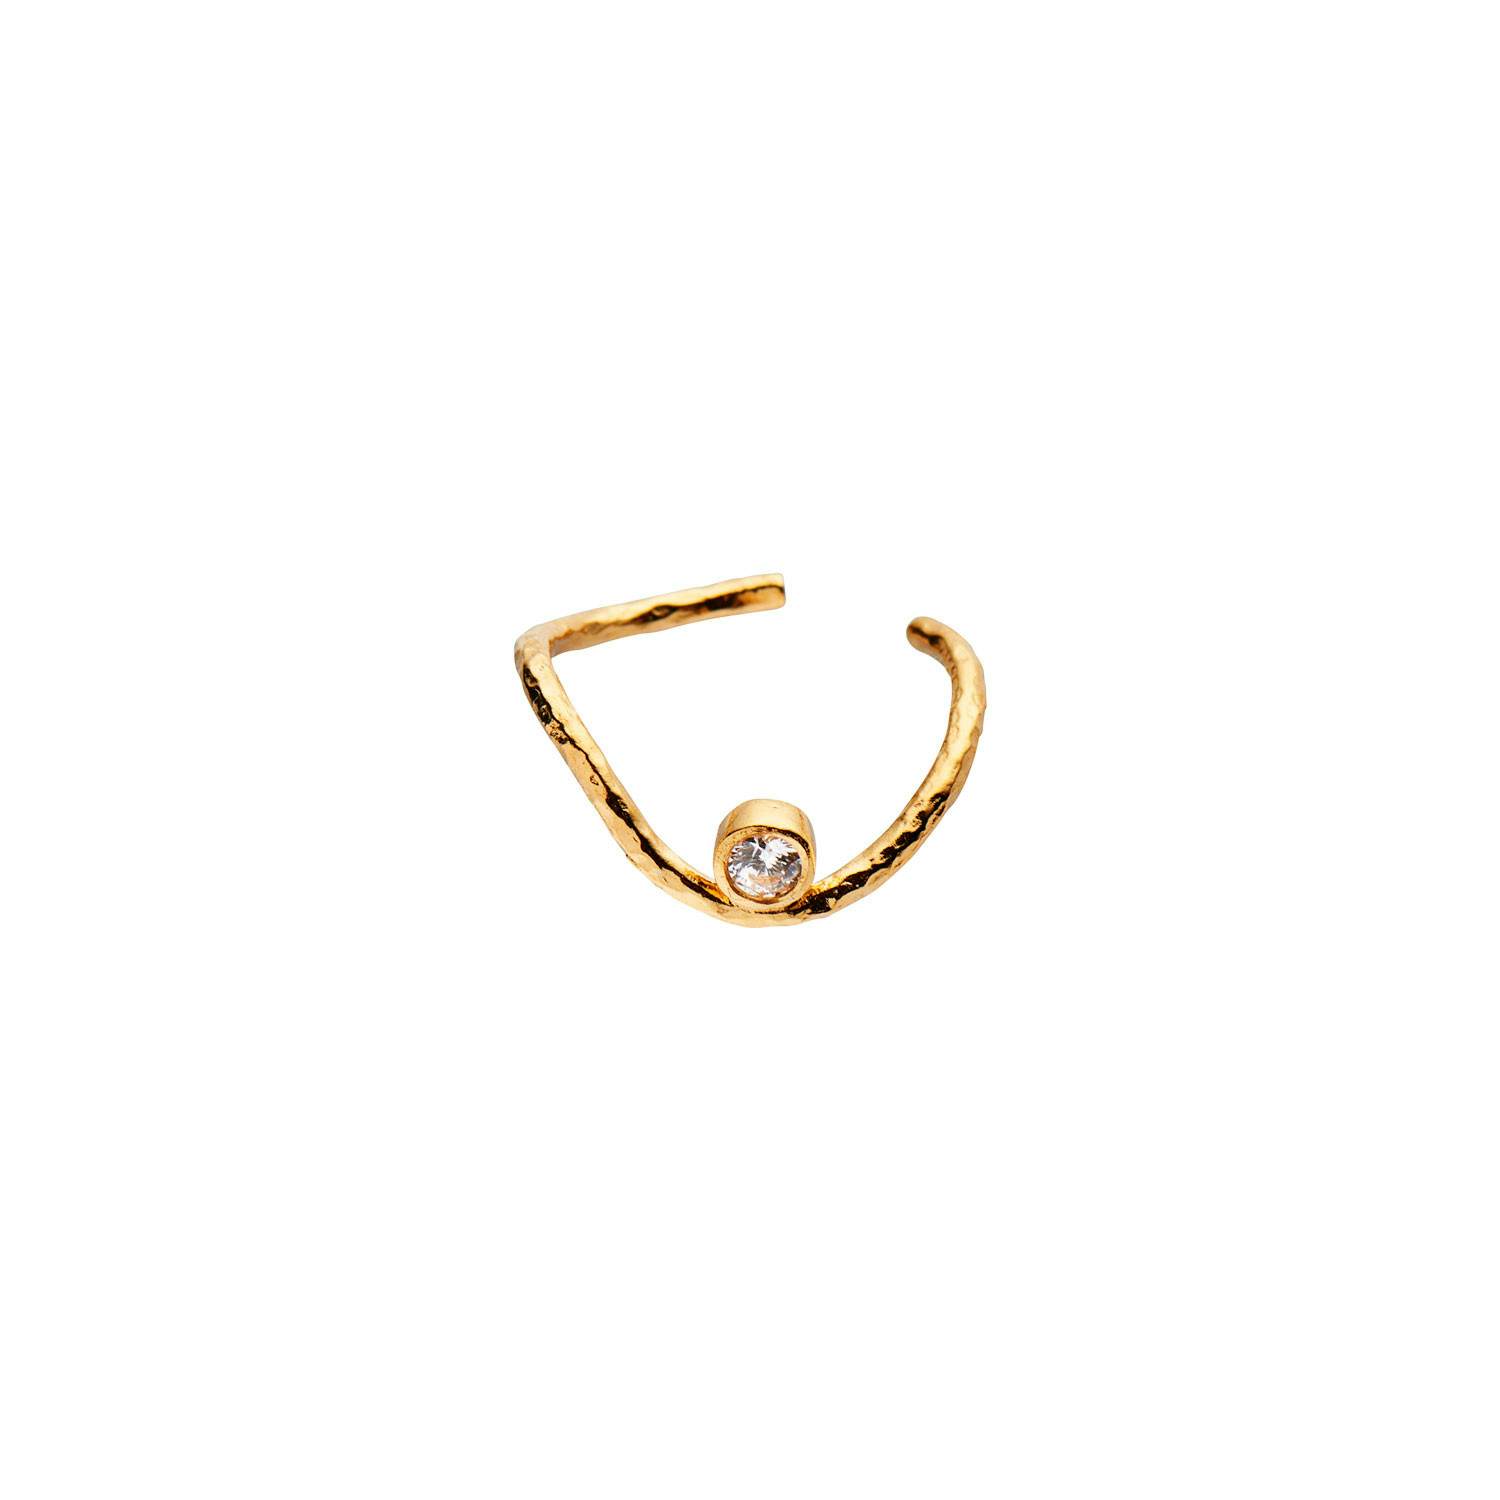 Wavy Ear Cuff With Stone fra STINE A Jewelry i Forgyldt-Sølv Sterling 925